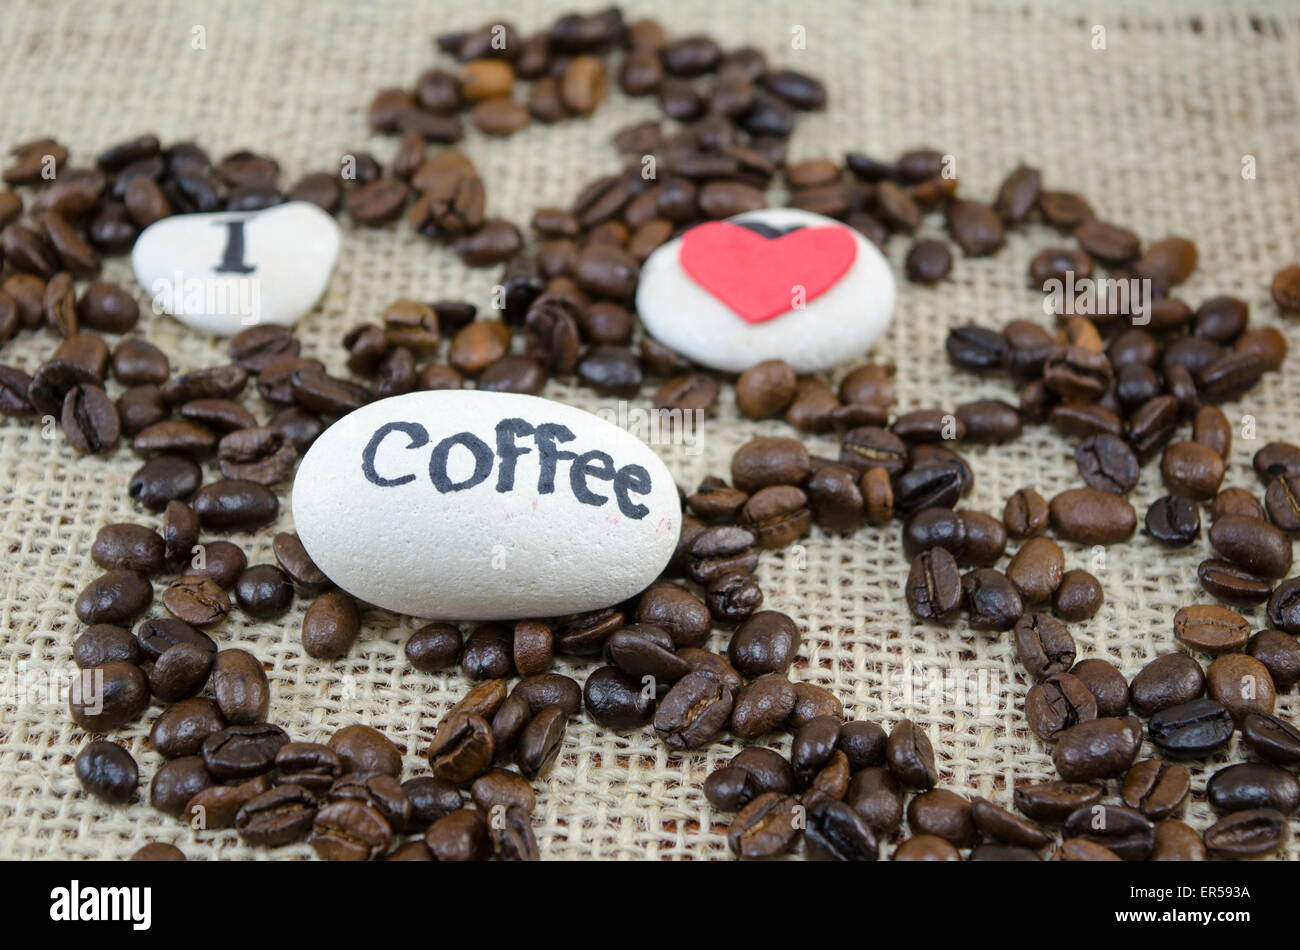 Les grains de café torréfié avec un "J'aime le café' sur une nappe vintage Banque D'Images